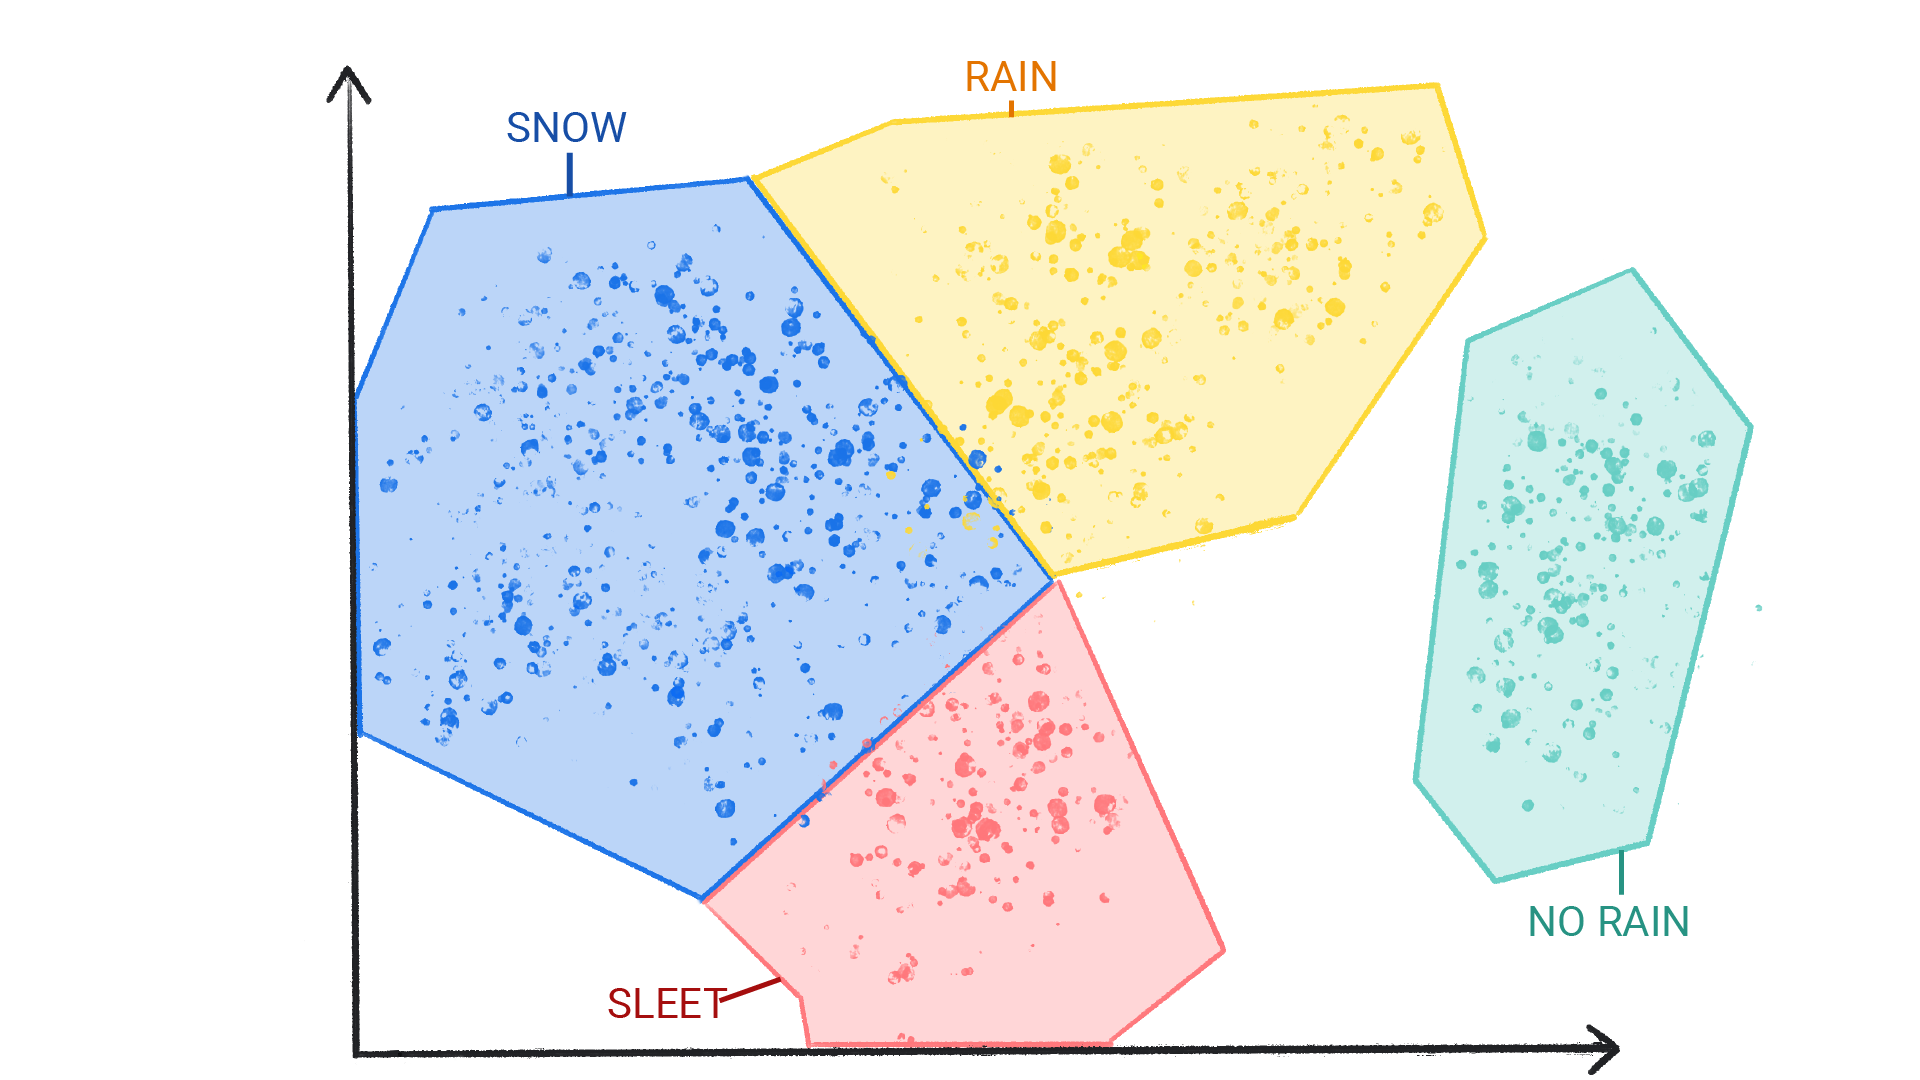 Uma imagem mostrando pontos coloridos em clusters rotulados como neve, chuva, granizo e nenhuma chuva, colocados em uma forma e lado a lado.